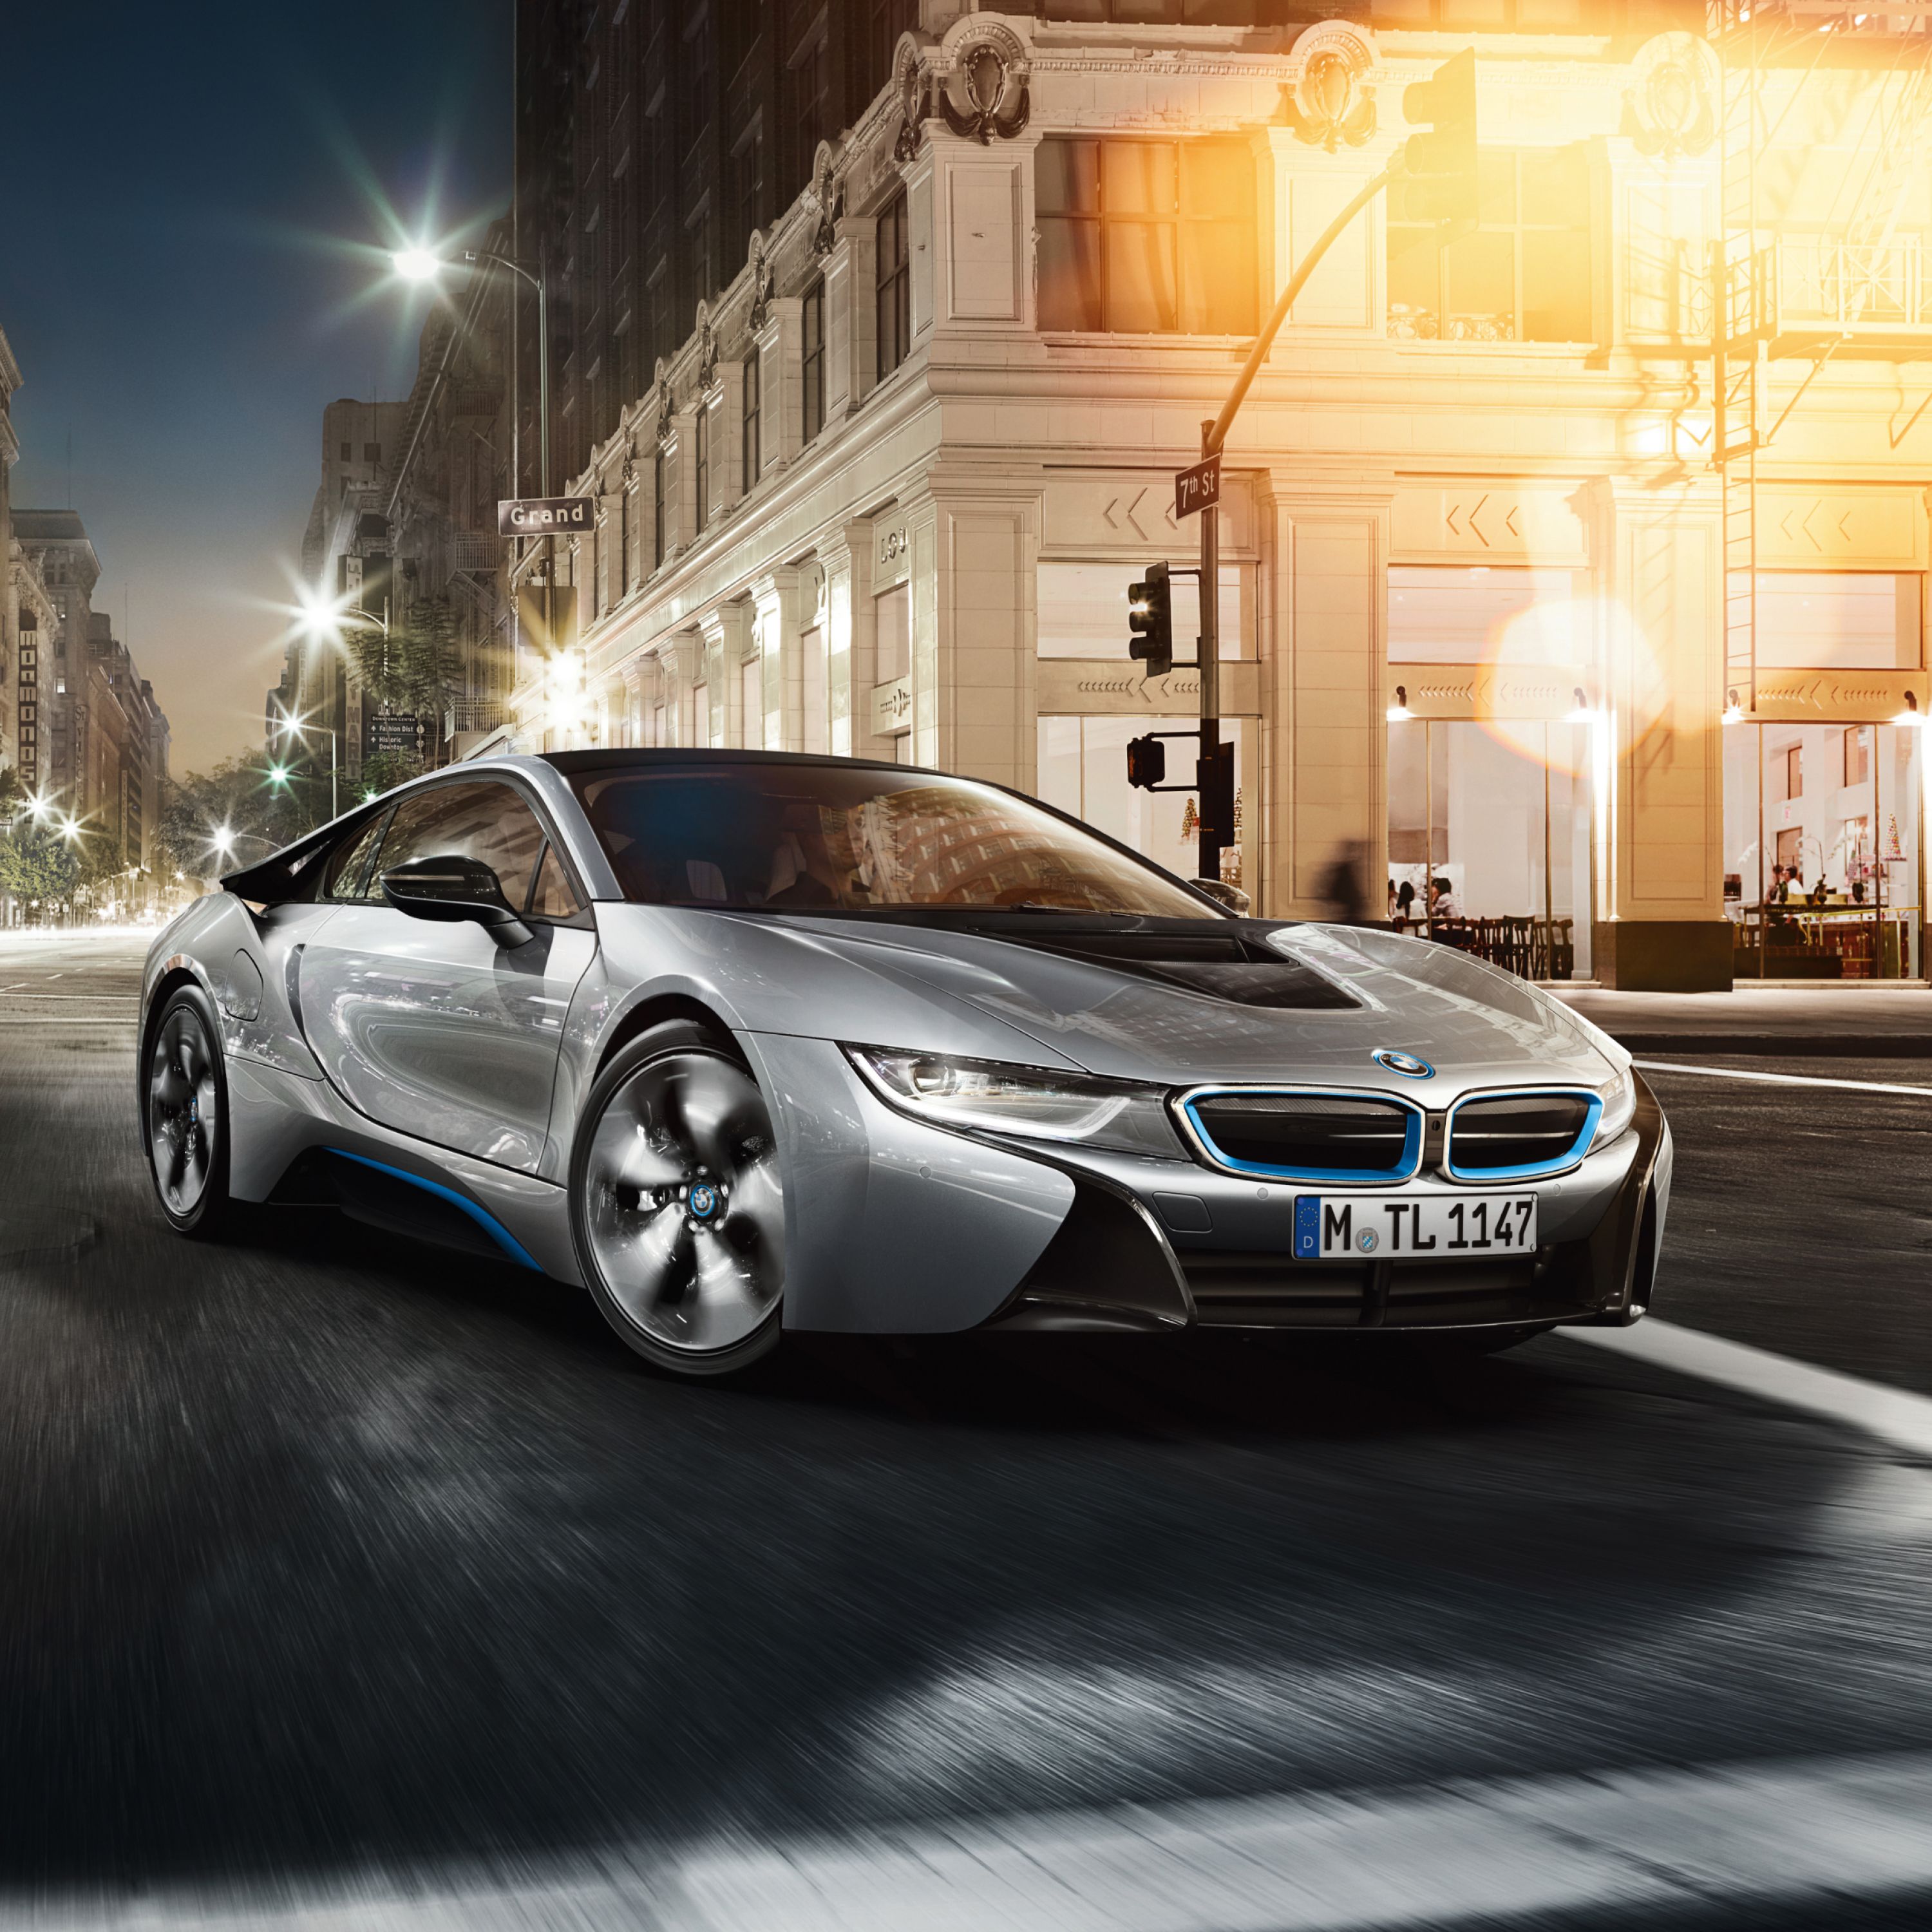 Ασημί BMW i8, σπορ αυτοκίνητο με τεχνολογία Plug-in Hybrid, σταθμευμένη μπροστά από πολυτελές ξενοδοχείο σε μεγαλούπολη